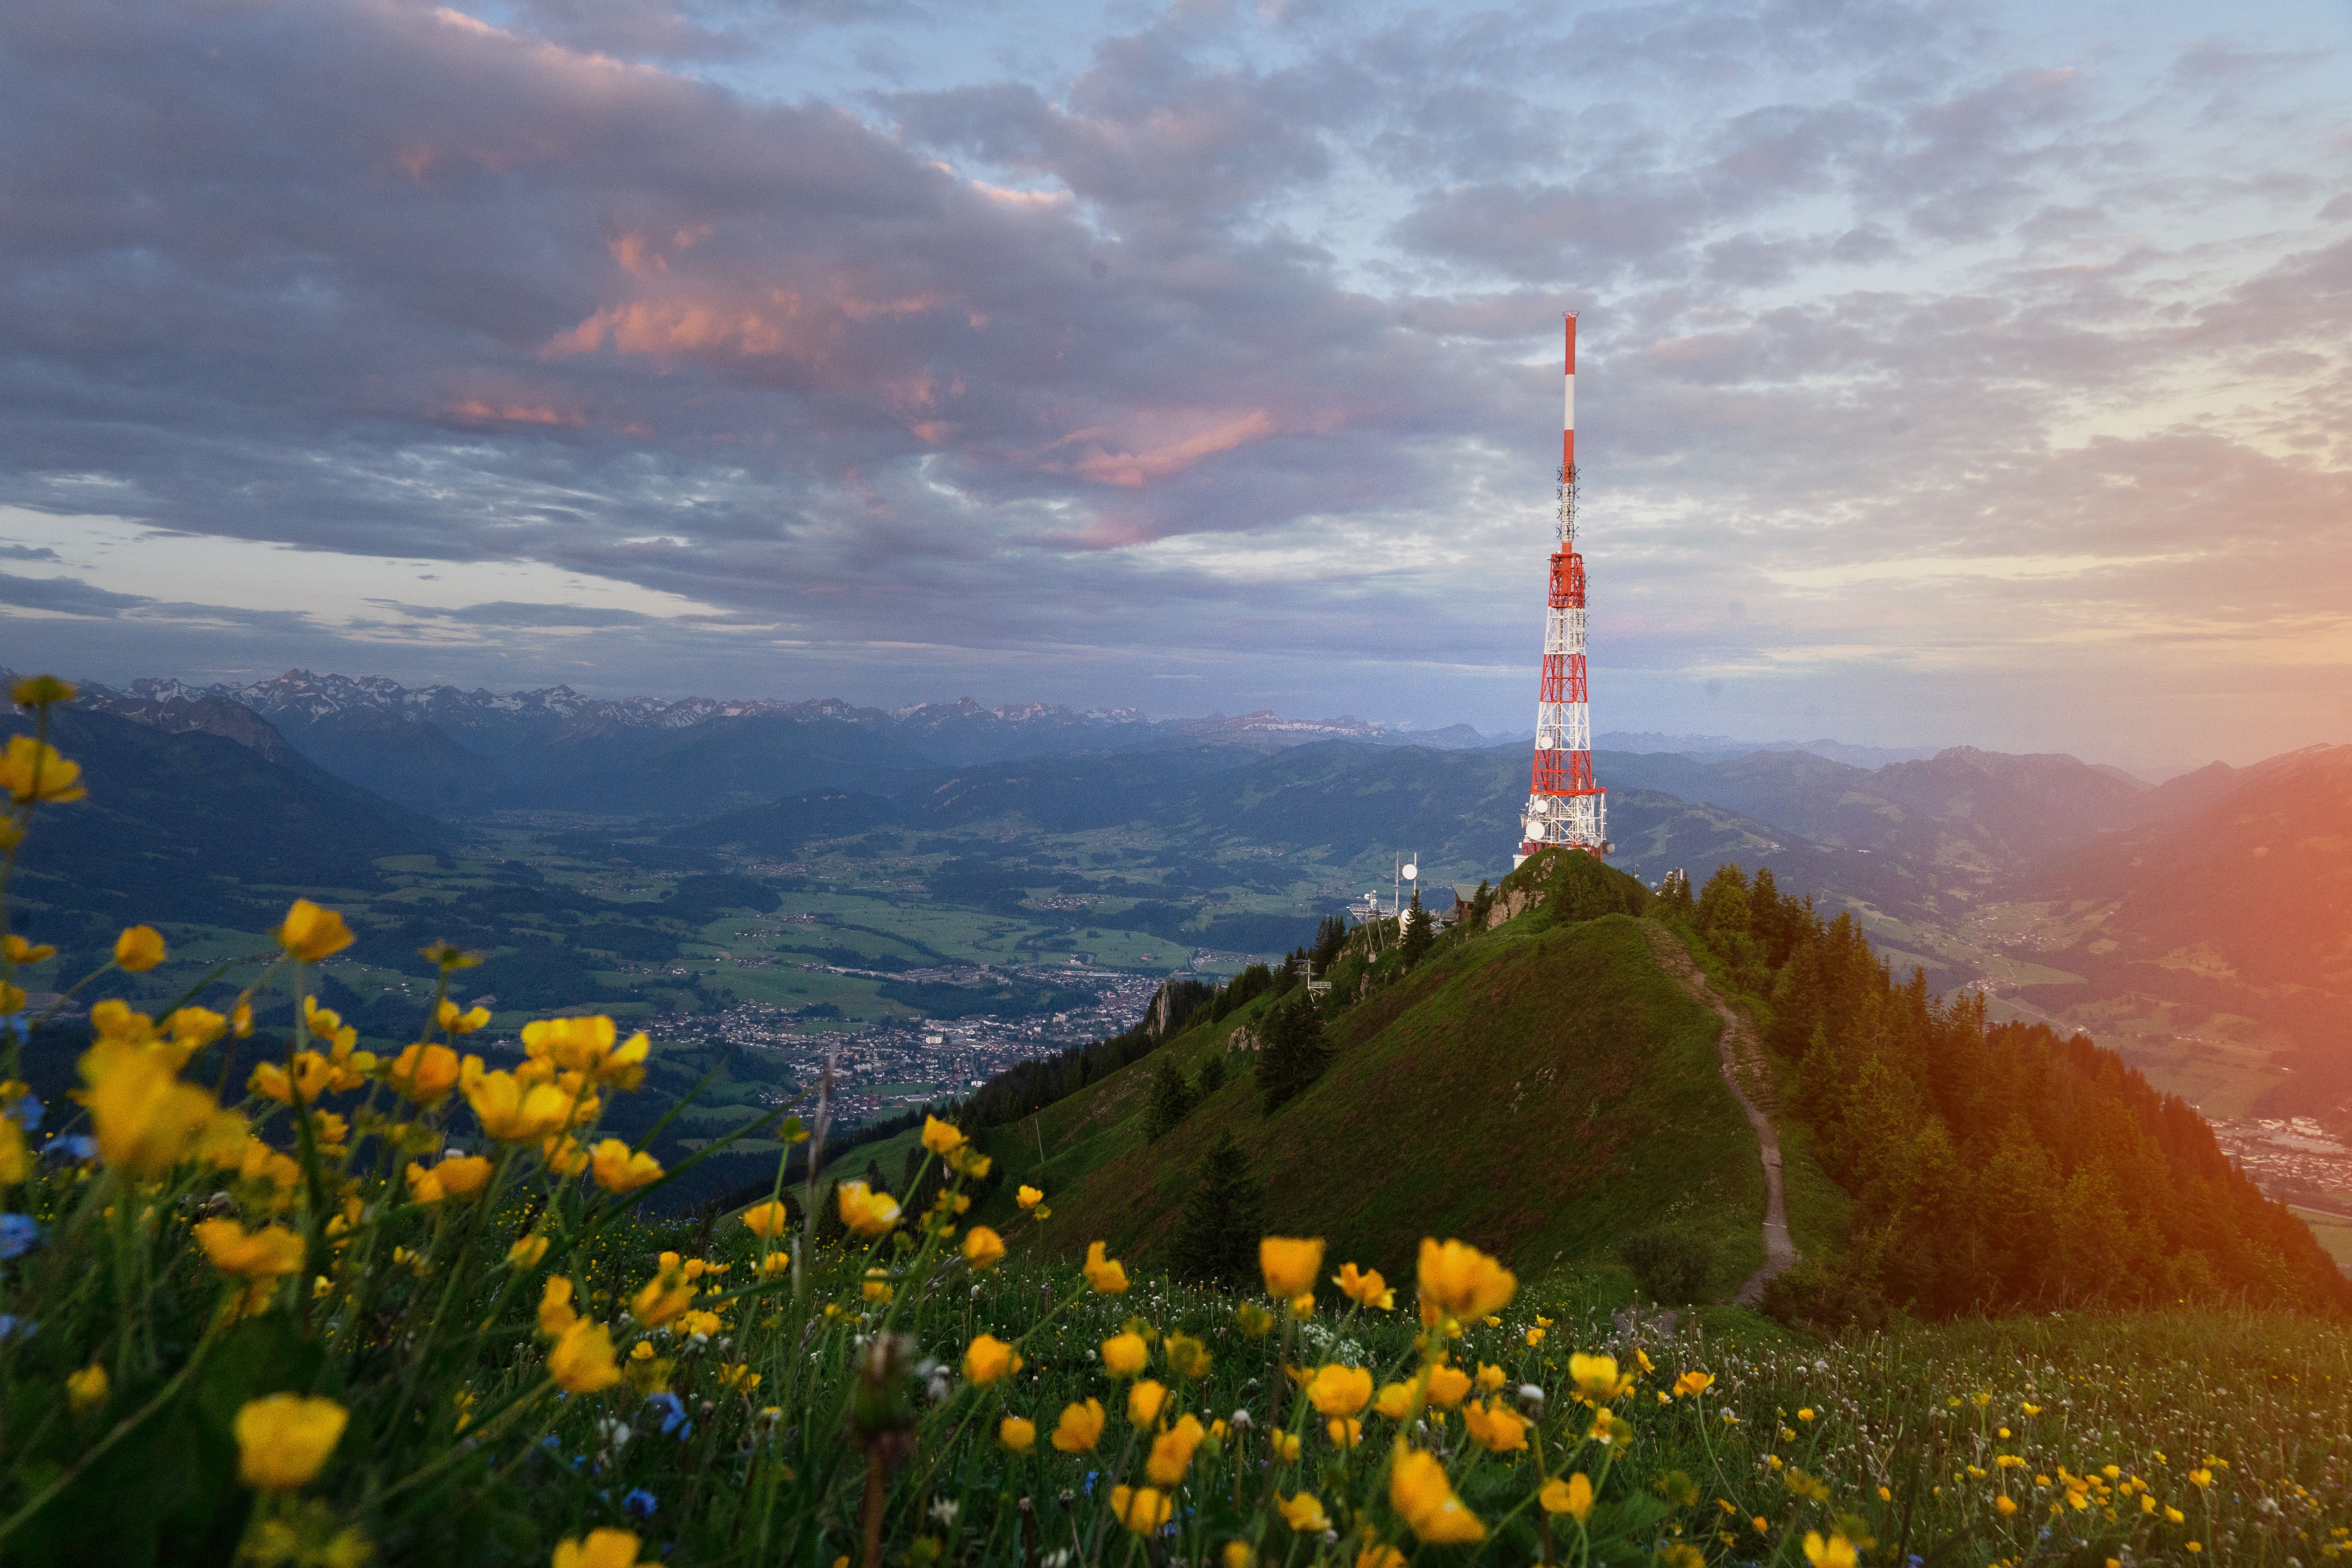 Gelbe Blumen blühen im Frühling vor dem Sendemast am Grünten. "Der Wächter des Allgäus" ist ein 1.738 Meter hoher Berg. Schon von weitem kündigt er durch seine vorgelagerte Stellung den Einstieg in die Allgäuer Alpen an.